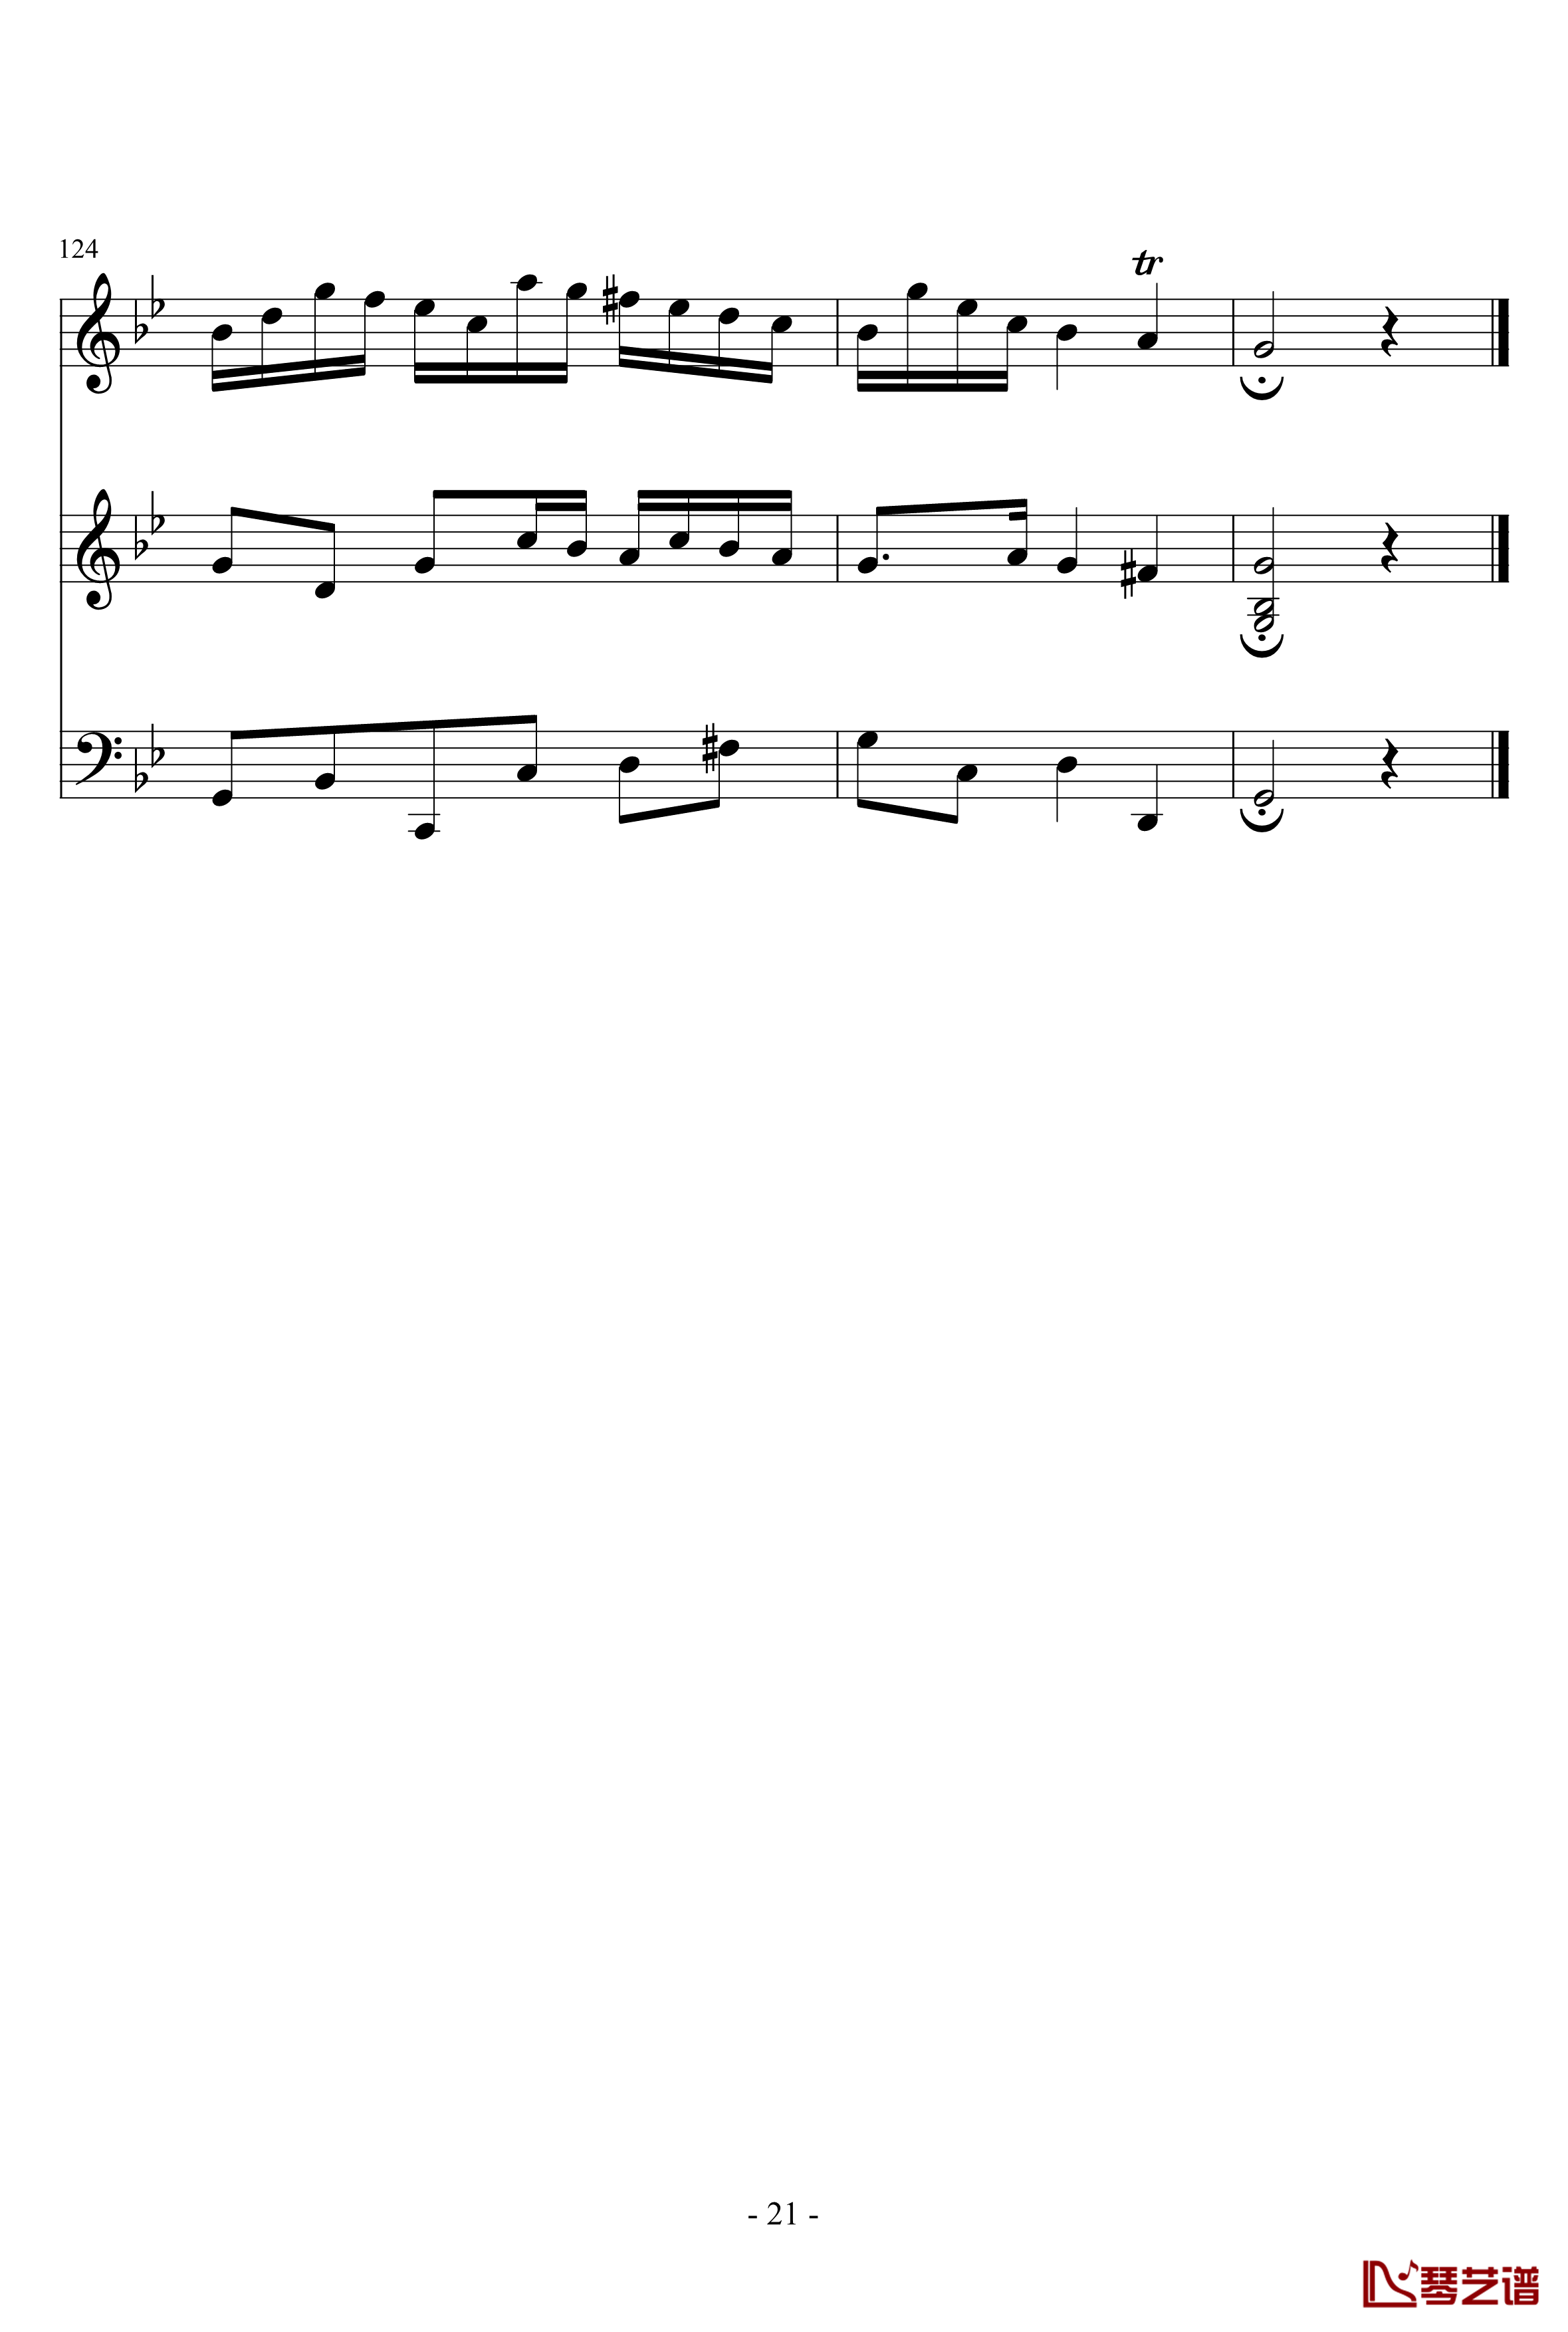 长笛与羽管键琴奏鸣曲第一乐章钢琴谱-巴赫-P.E.Bach21